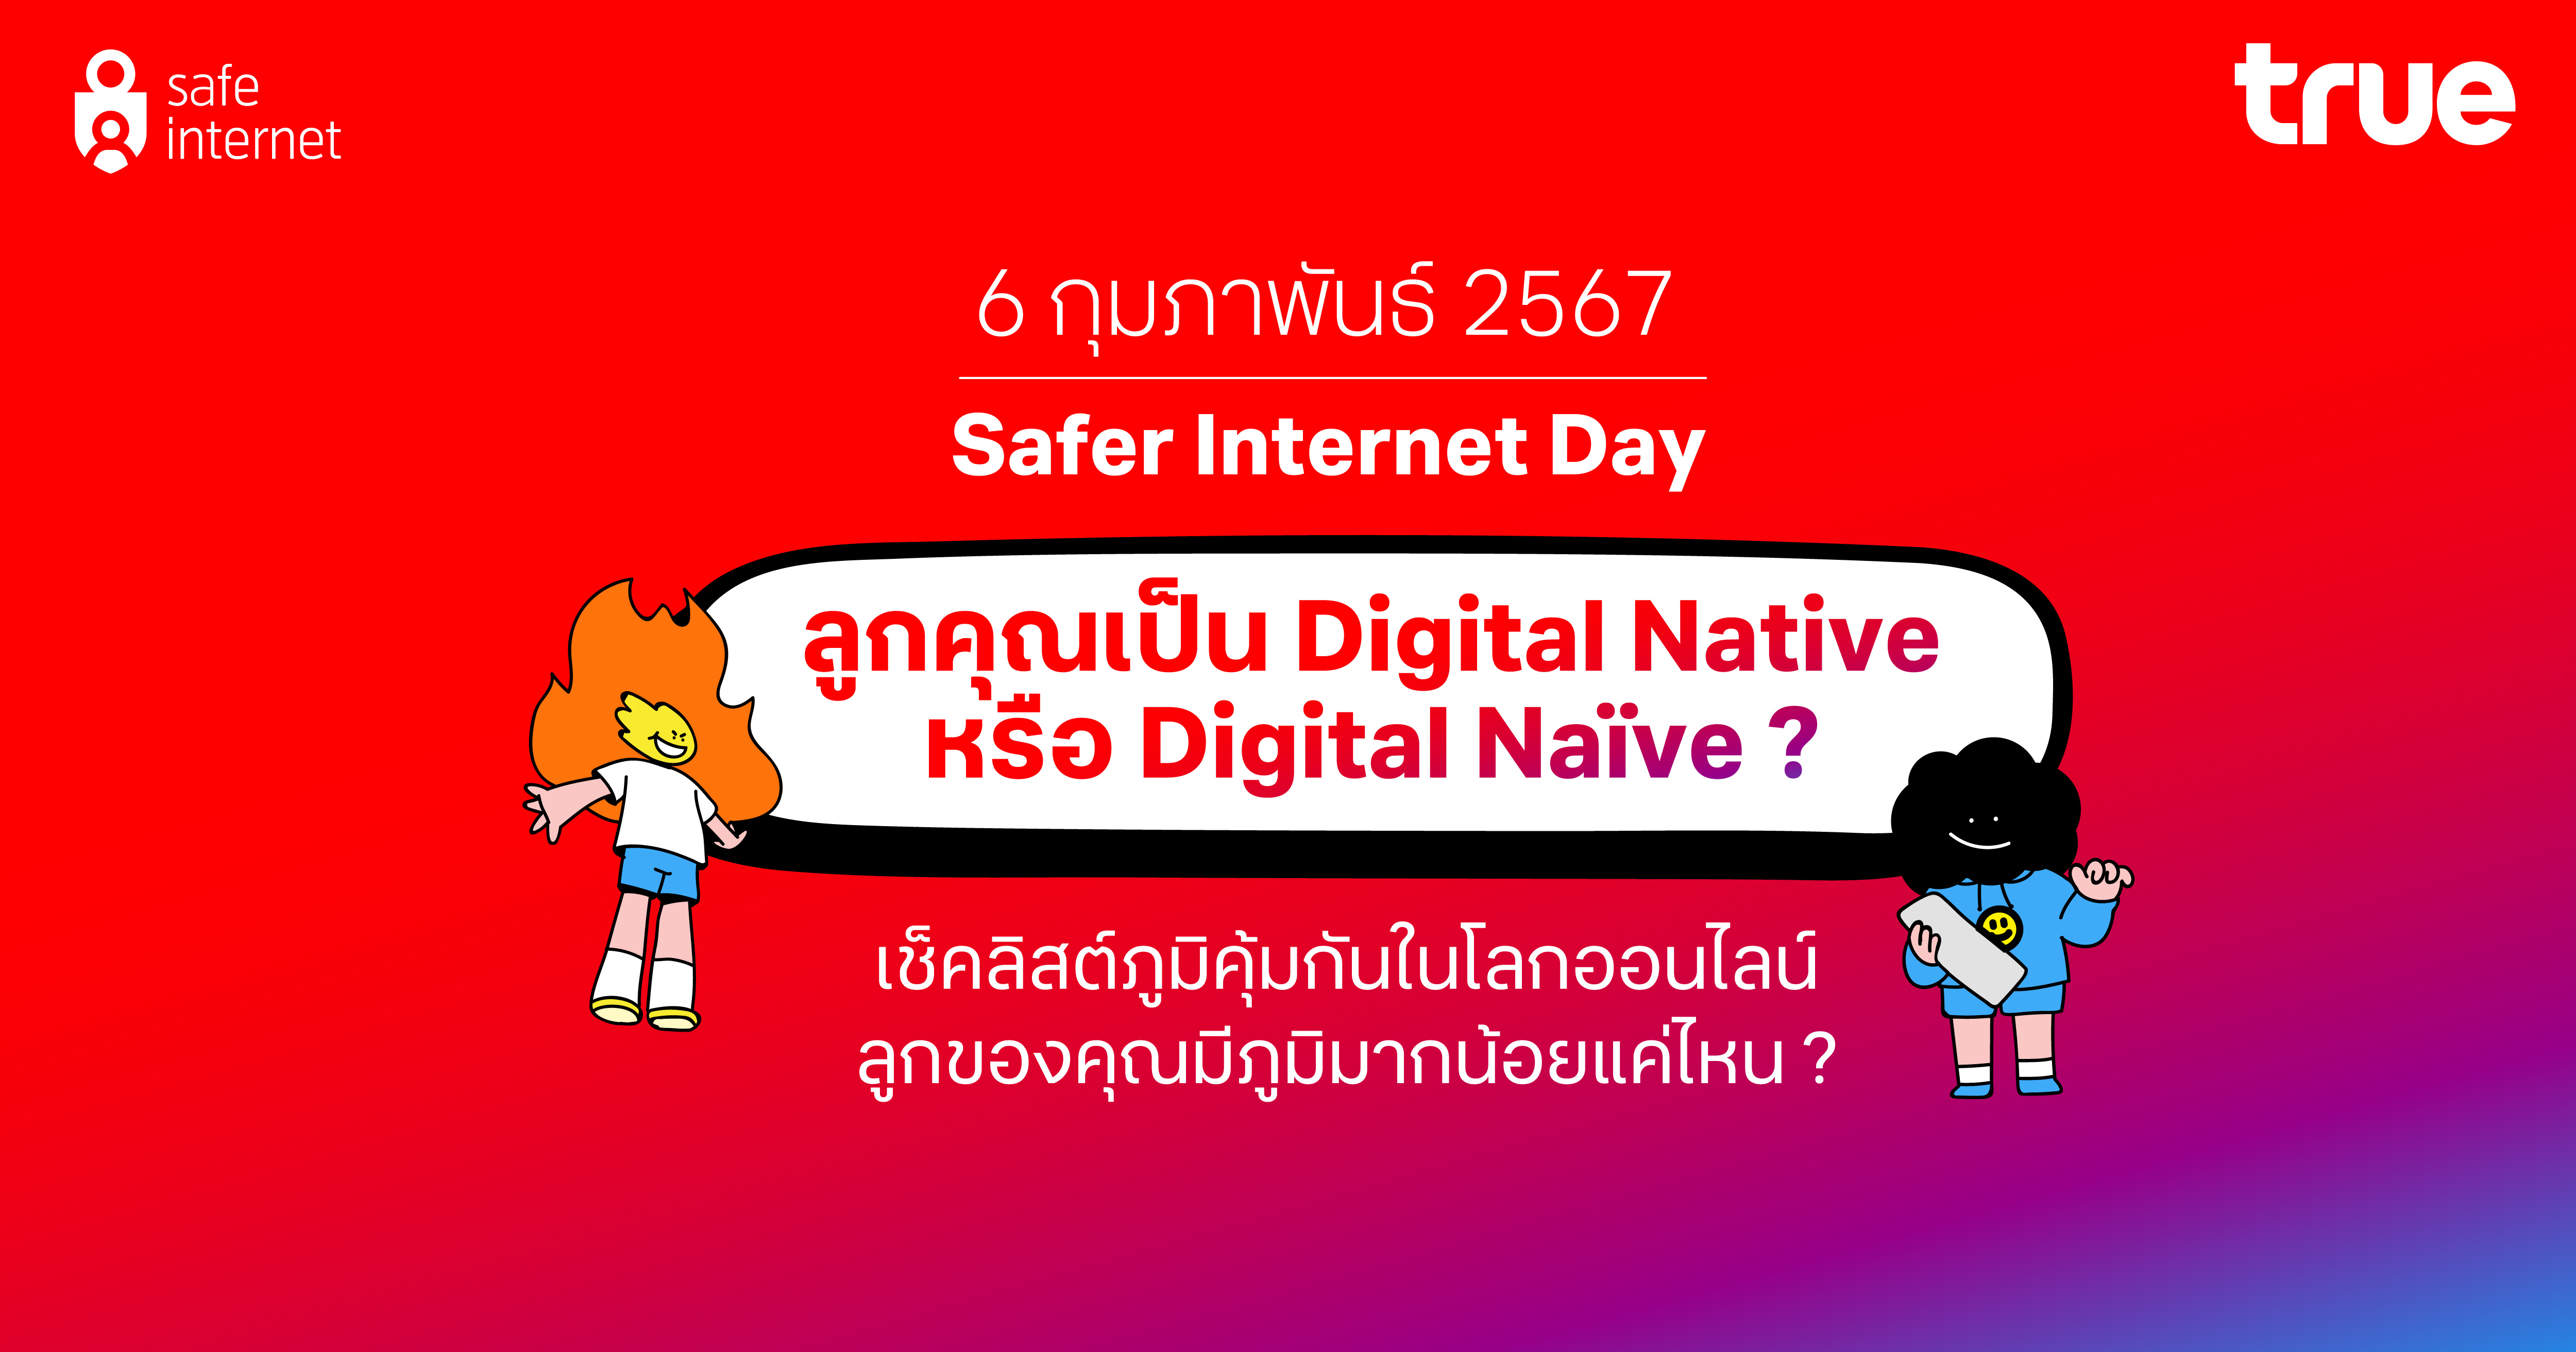 บนโลกออนไลน์...คุณรู้จักลูกคุณดีแค่ไหน? ทรู ชวนสร้างภูมิคุ้มกันให้เด็กไทย รับวัน Safer Internet Day